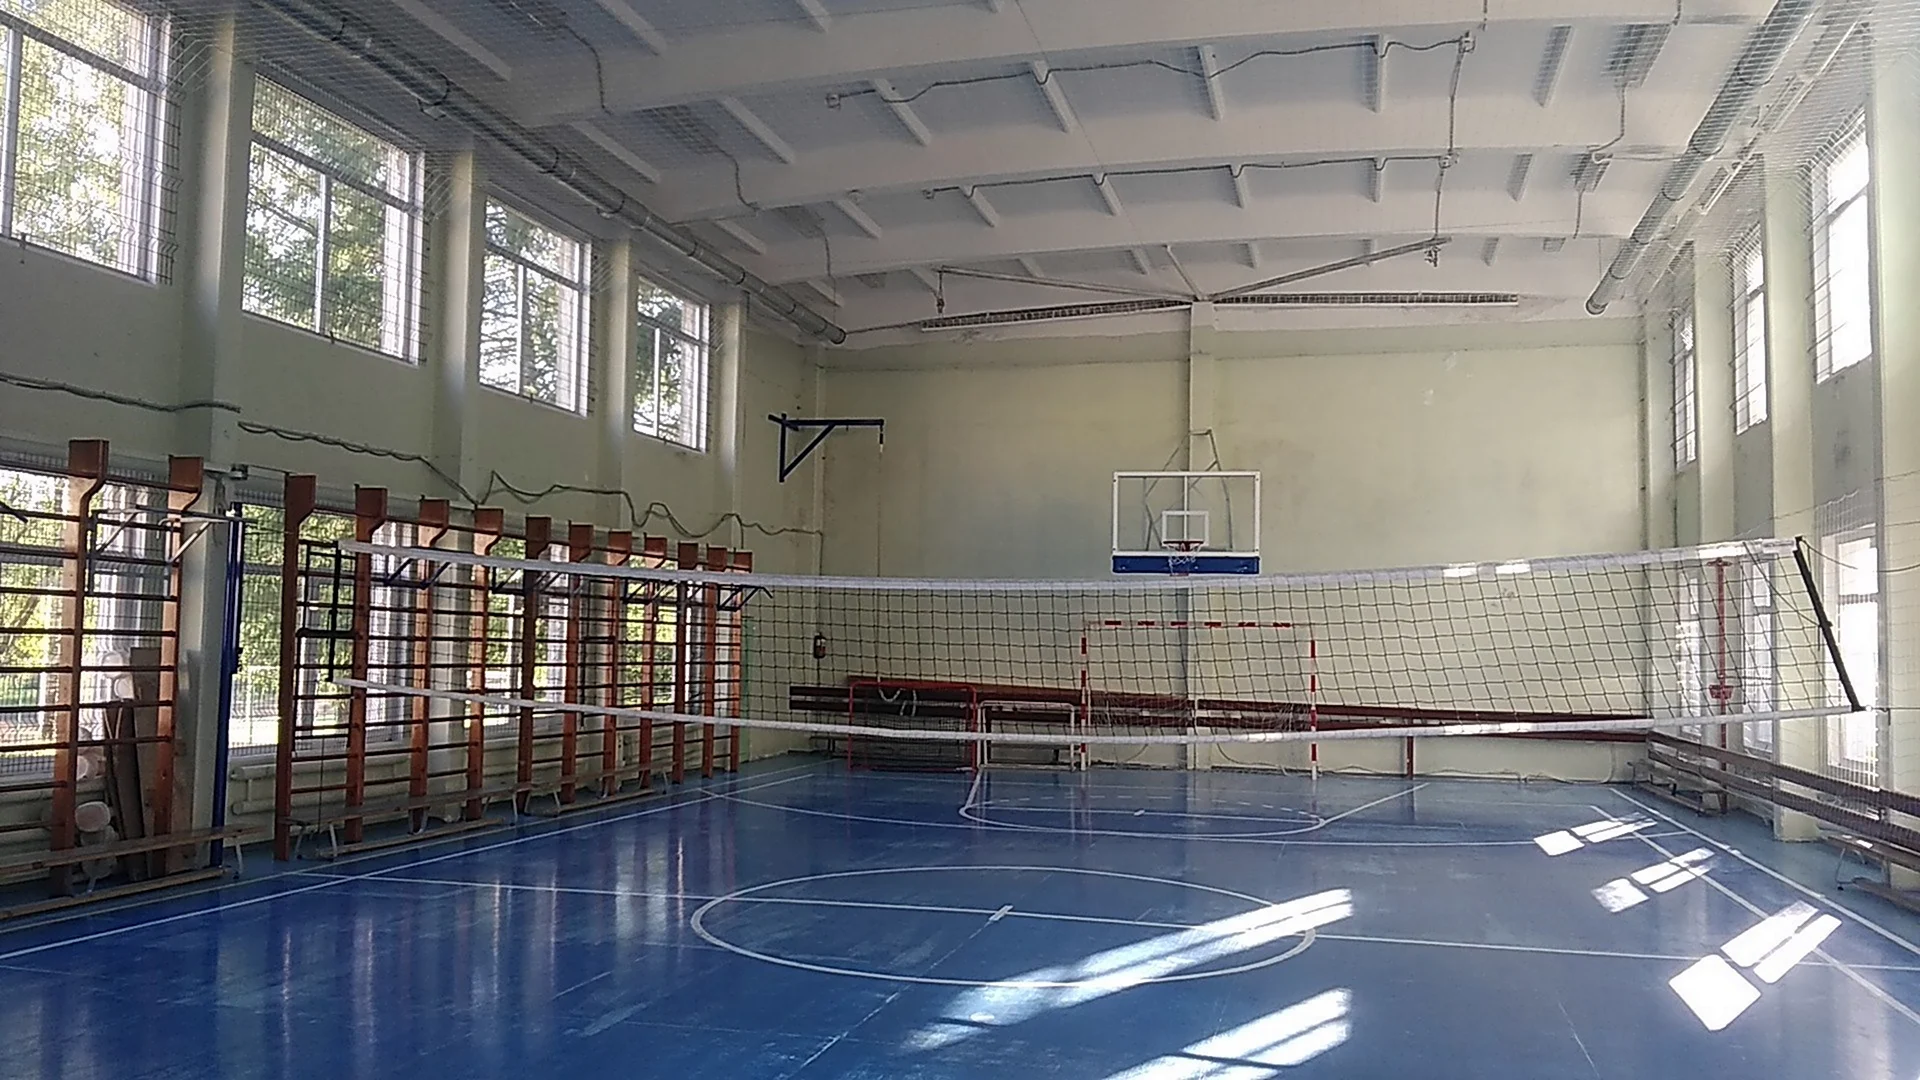 Динамо 44 волейбольный зал